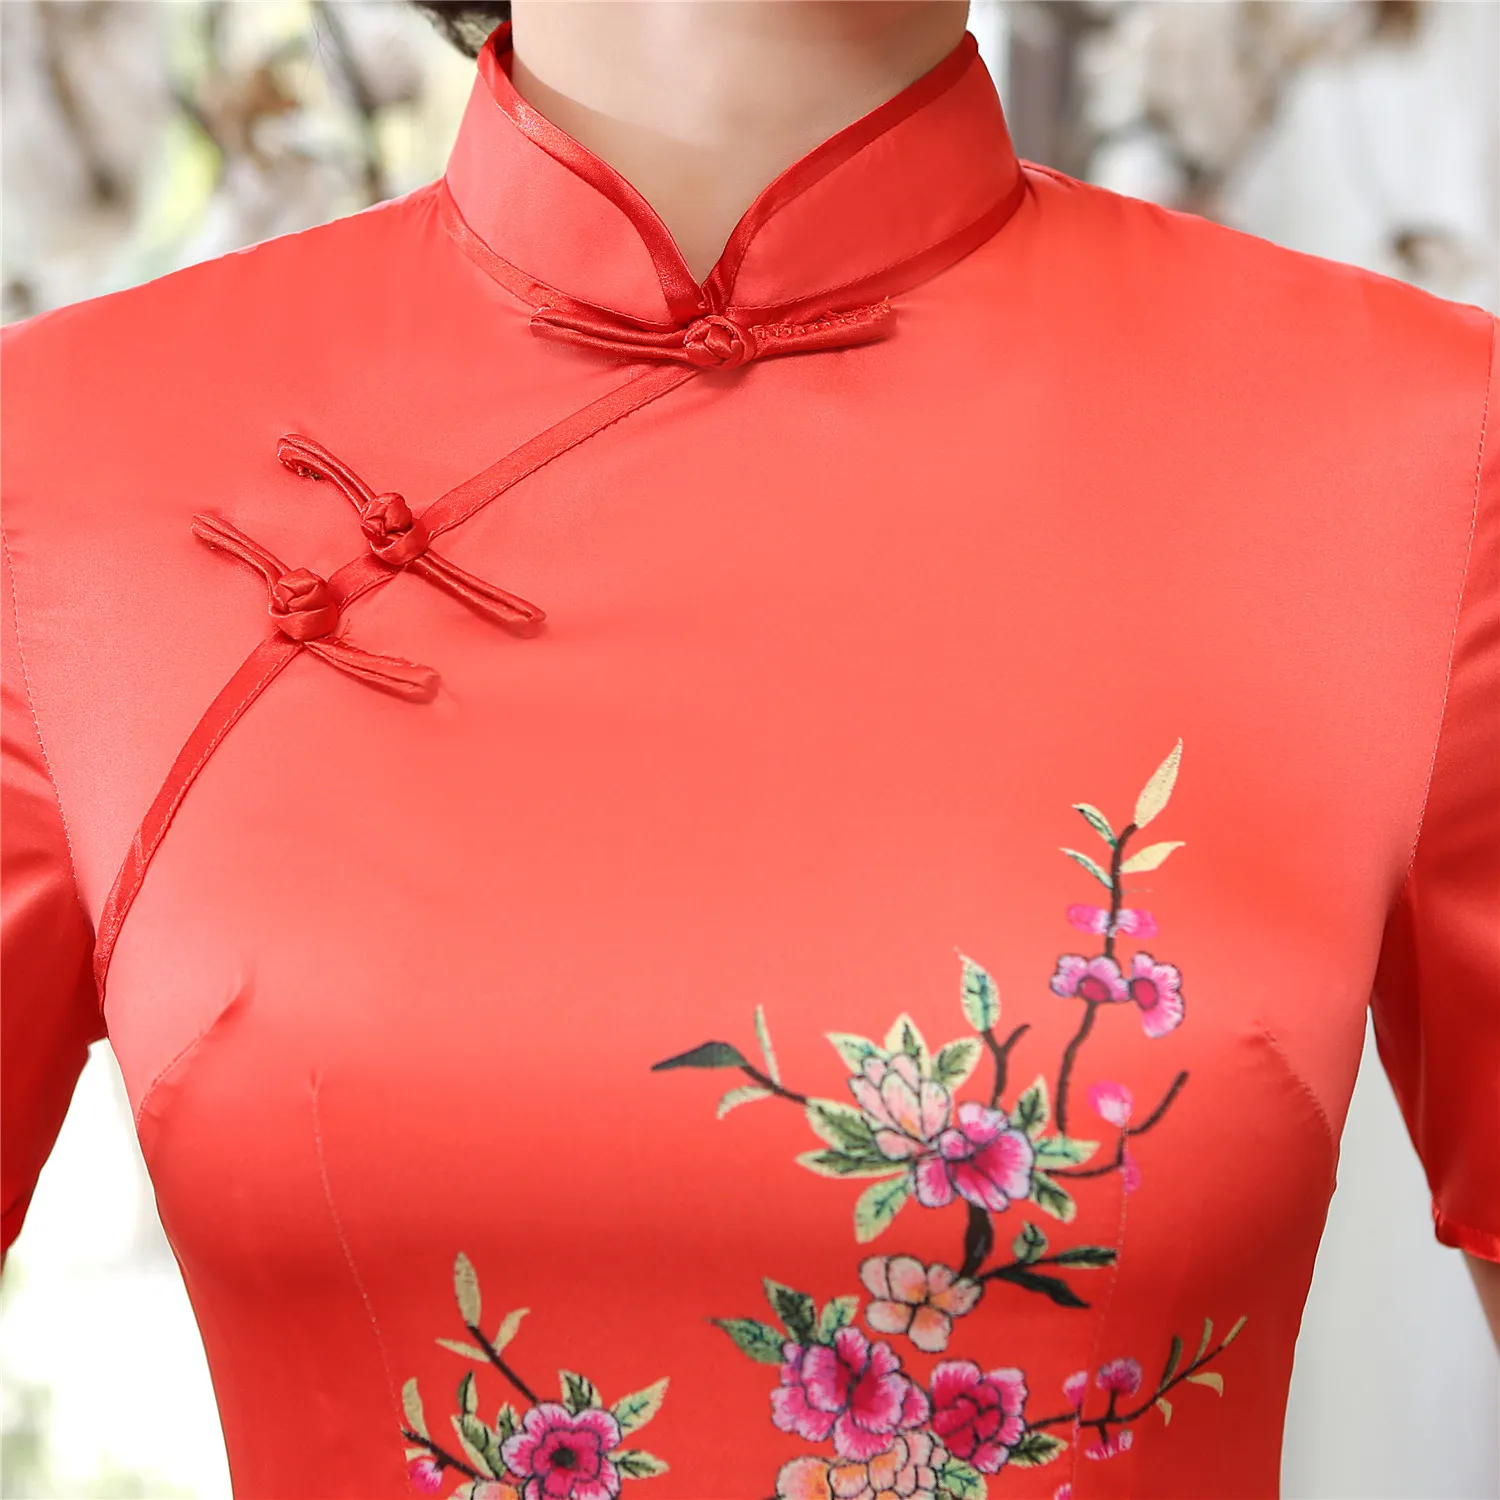 Szanghajska historia Wietnam aodai chińskie tradycyjne ubranie dla kobiety qipao długą chińską sukienkę orientalną czerwoną cheongsam ao dai849939